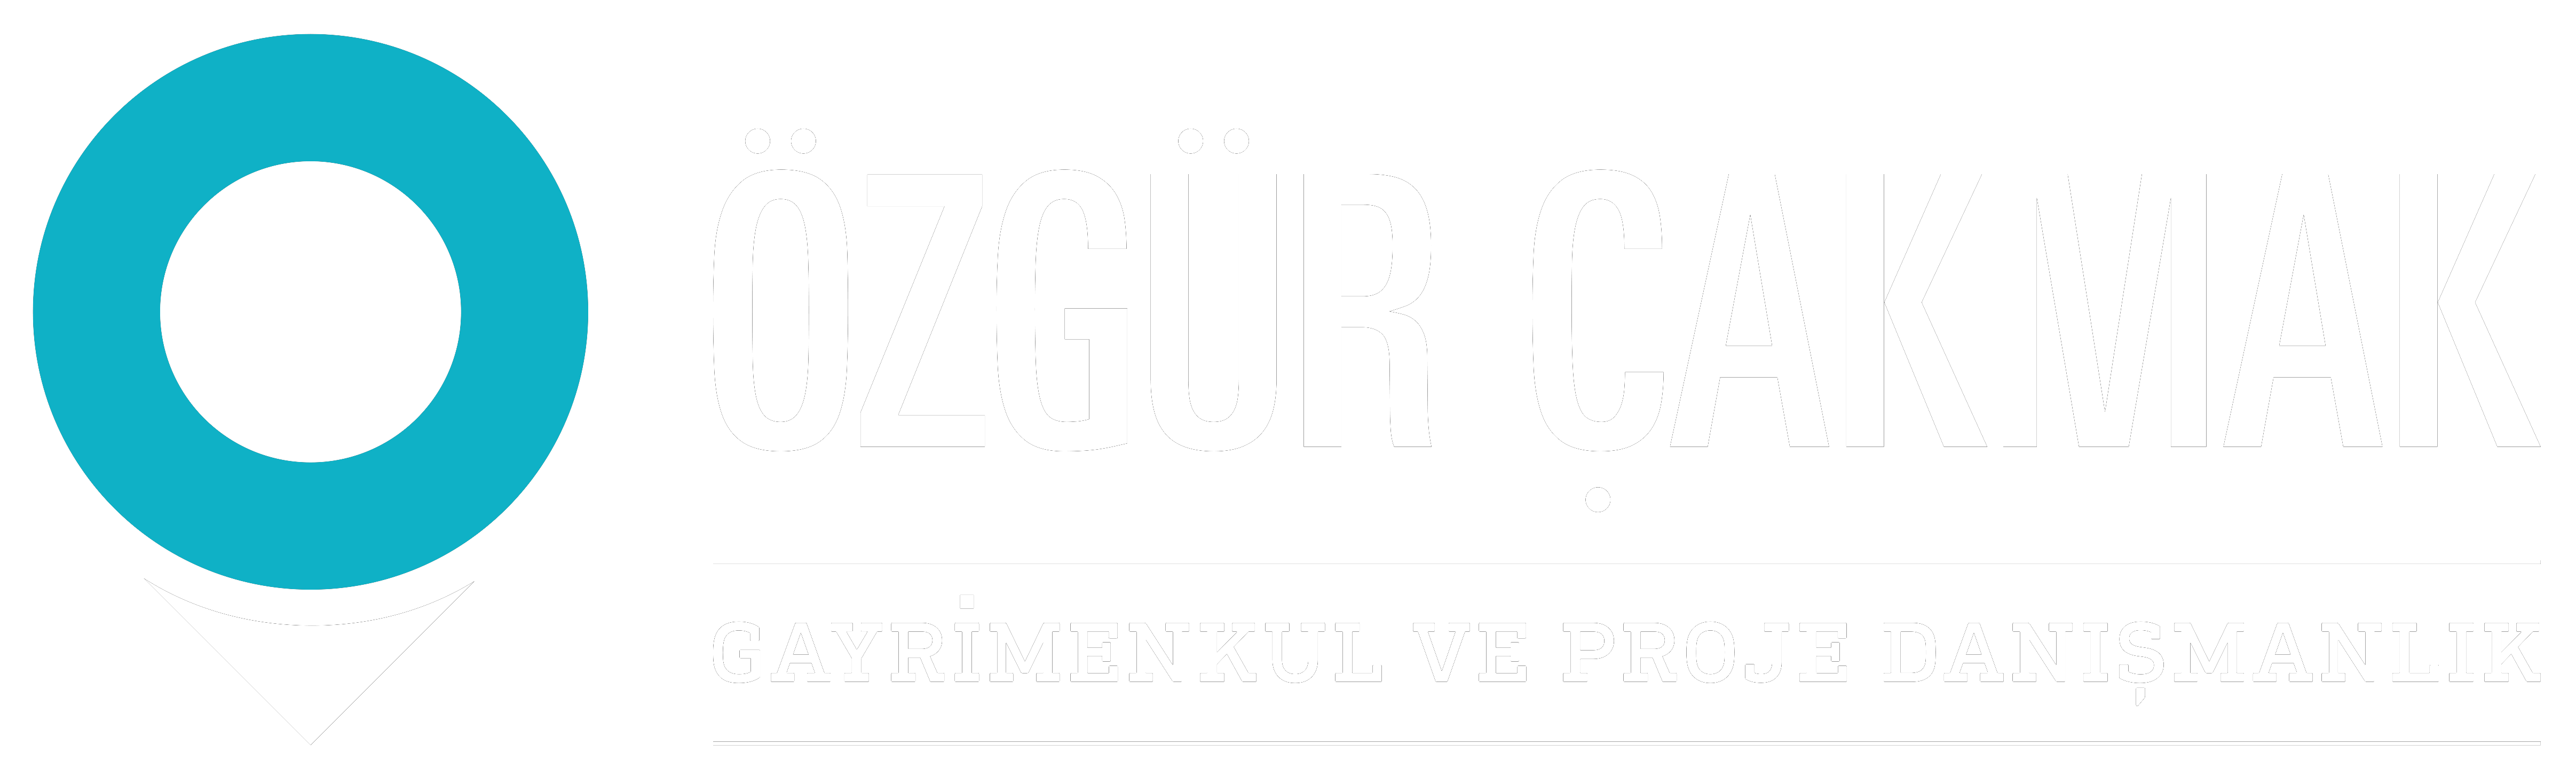 ozgur-cakmak-logo